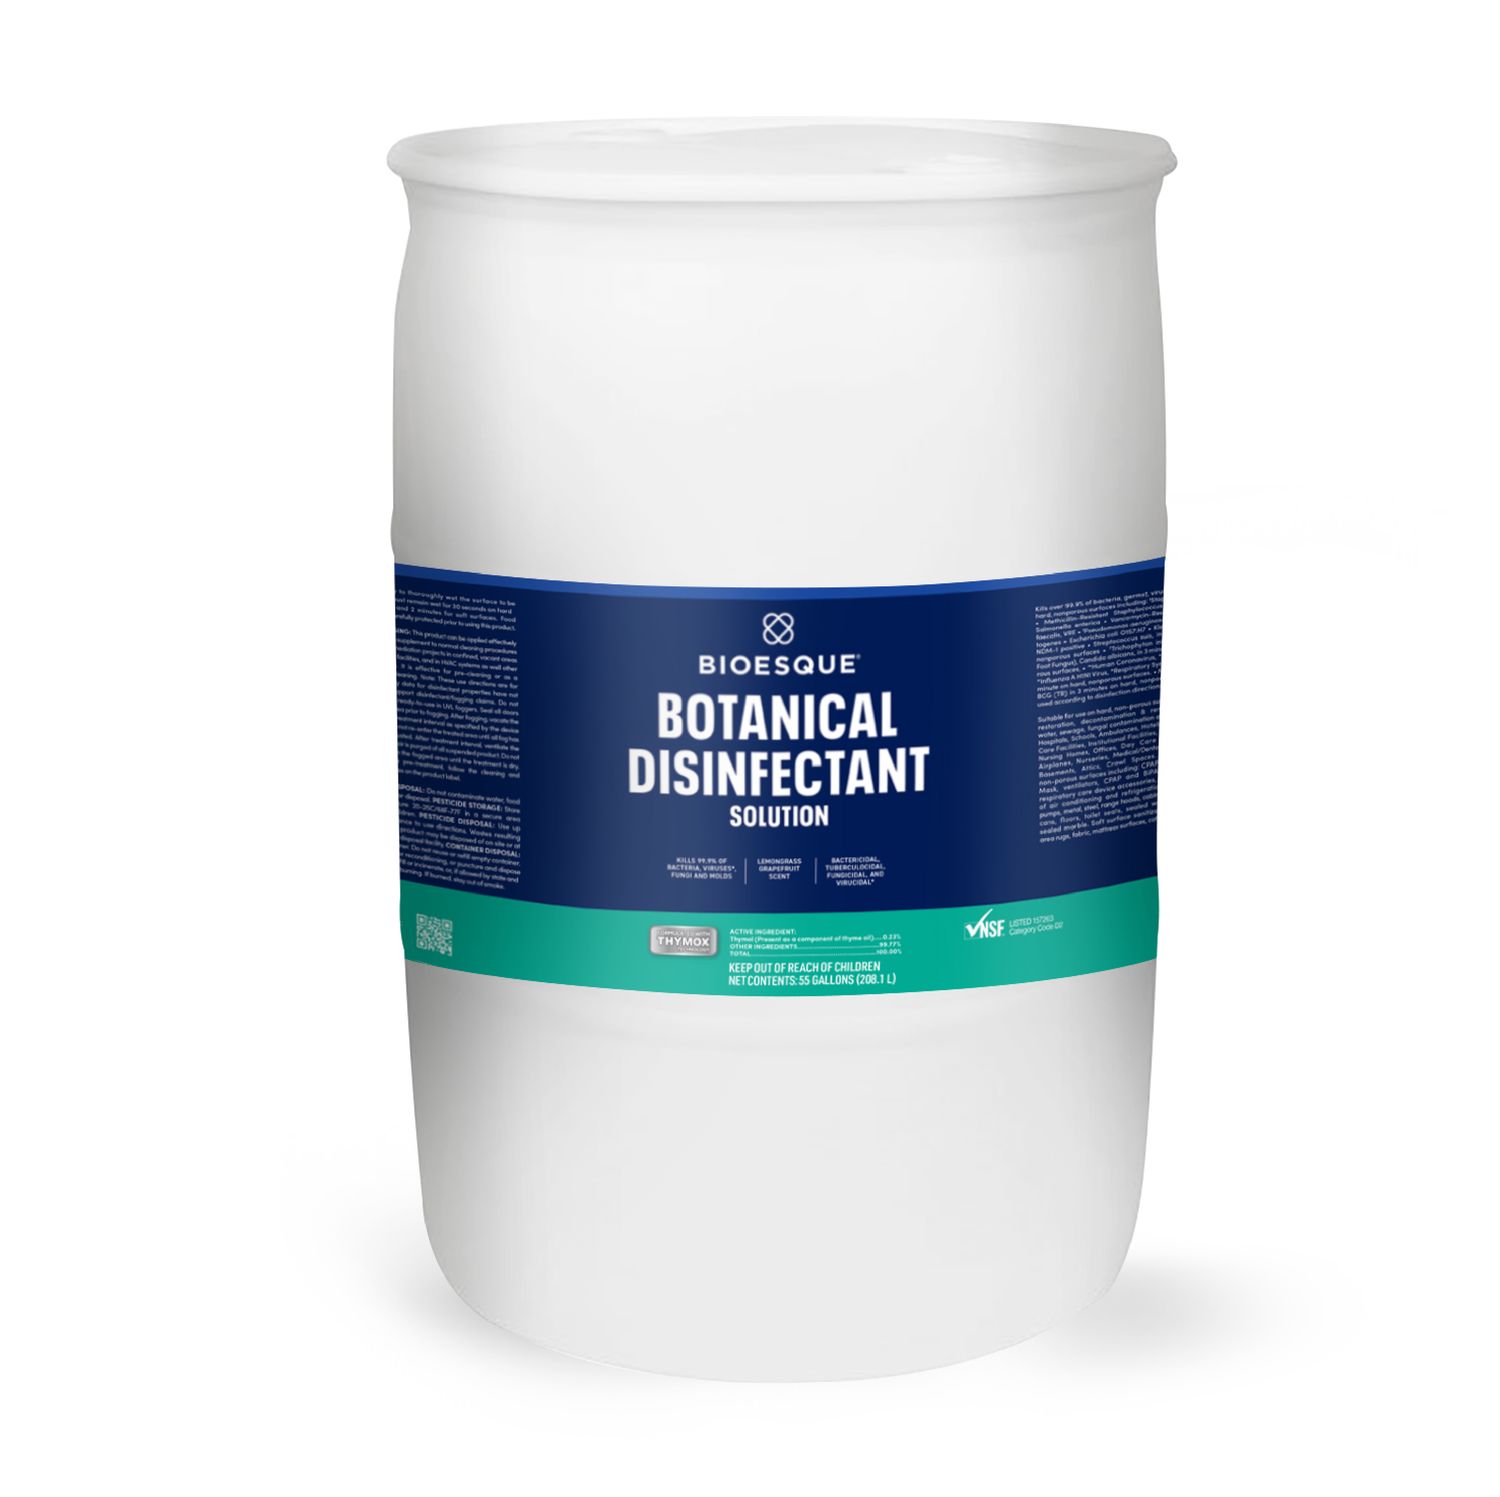 Bioesque Botanical Disinfectant - 55GL Drum